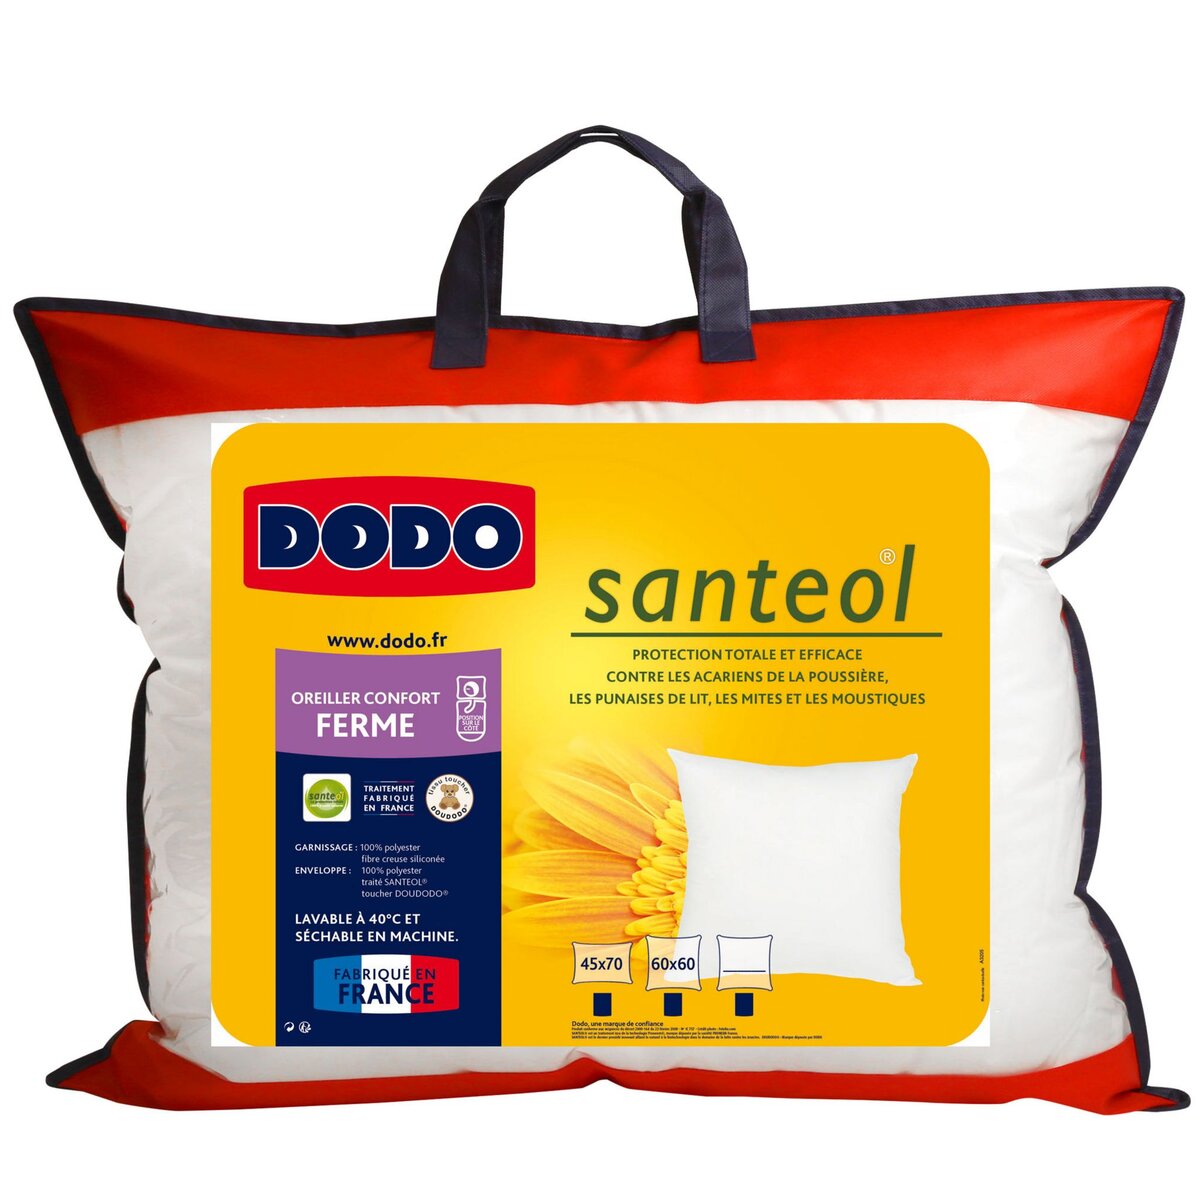 DODO Oreiller ferme traitement aux huiles essentielles Santeol anti insectes